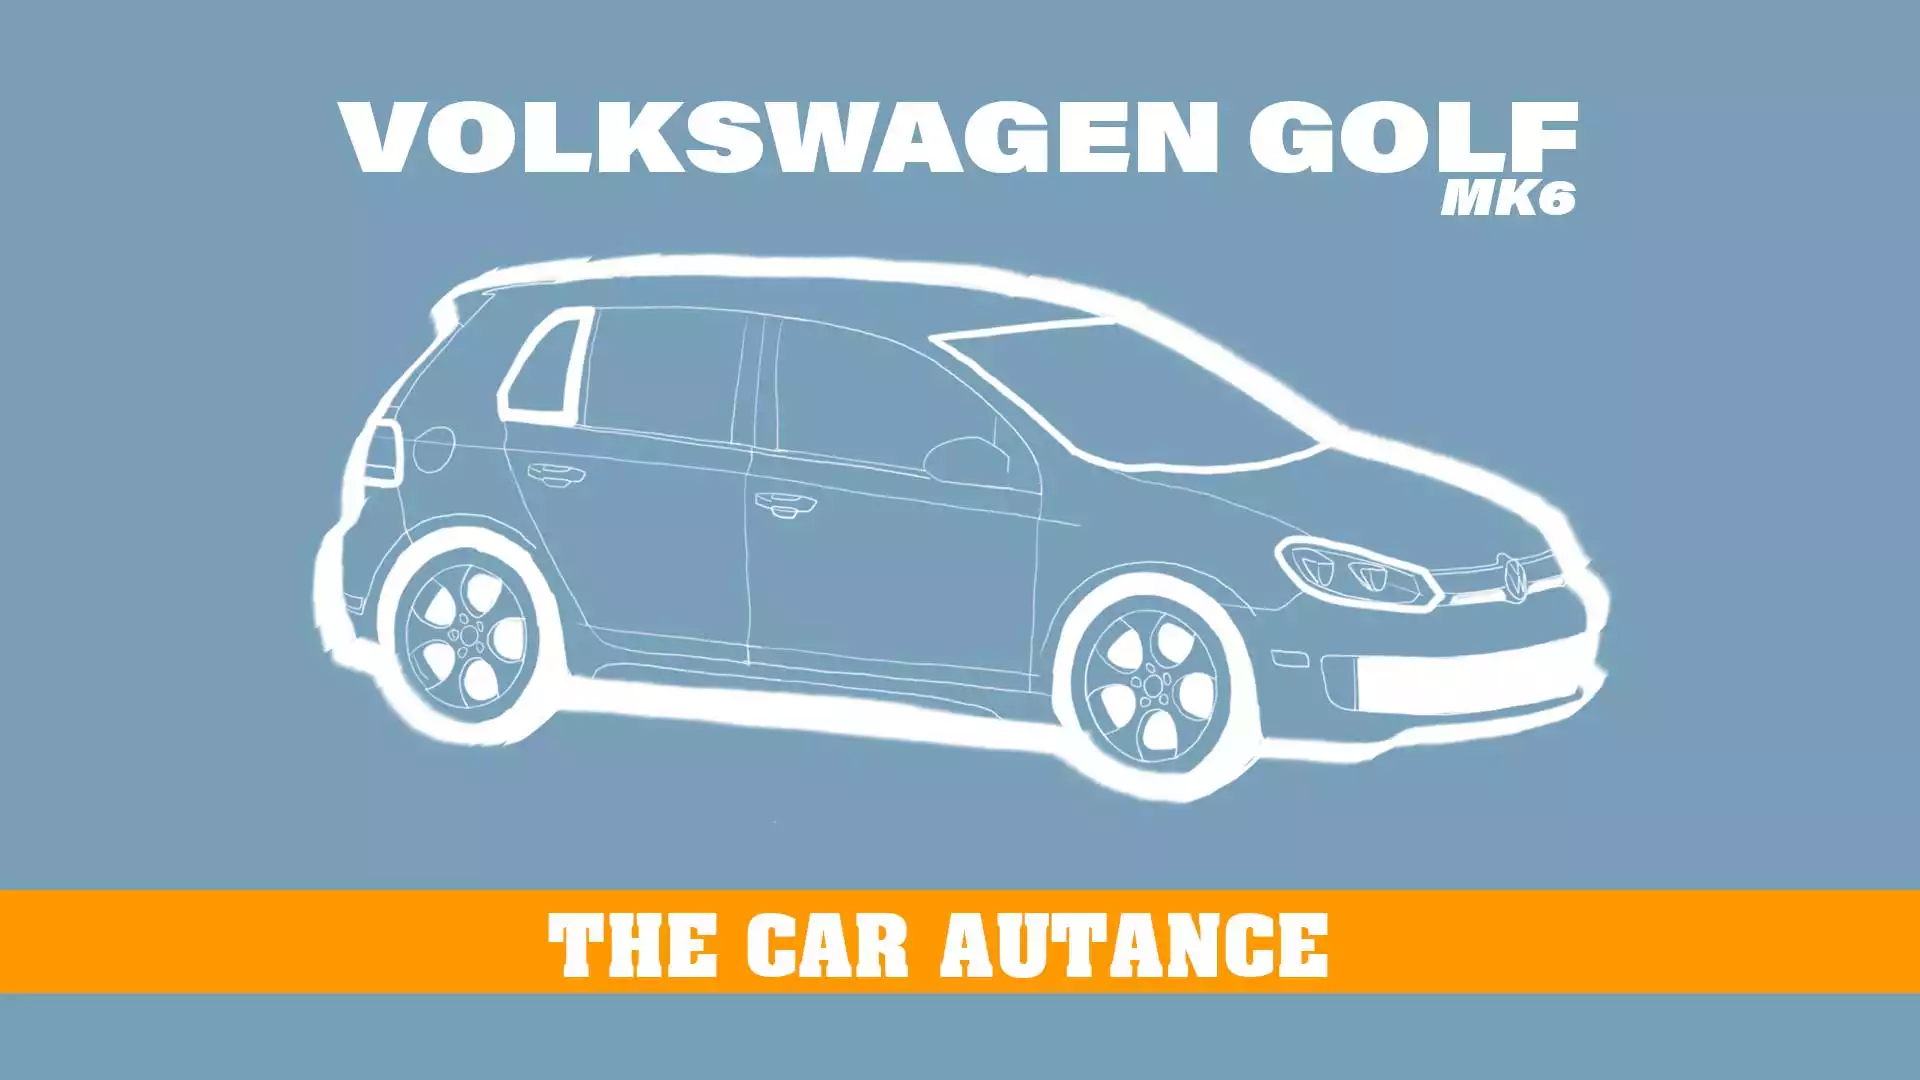 Volkswagen Golf: The Car Autance (Mk6 5K1 PQ35; 2010-2014)